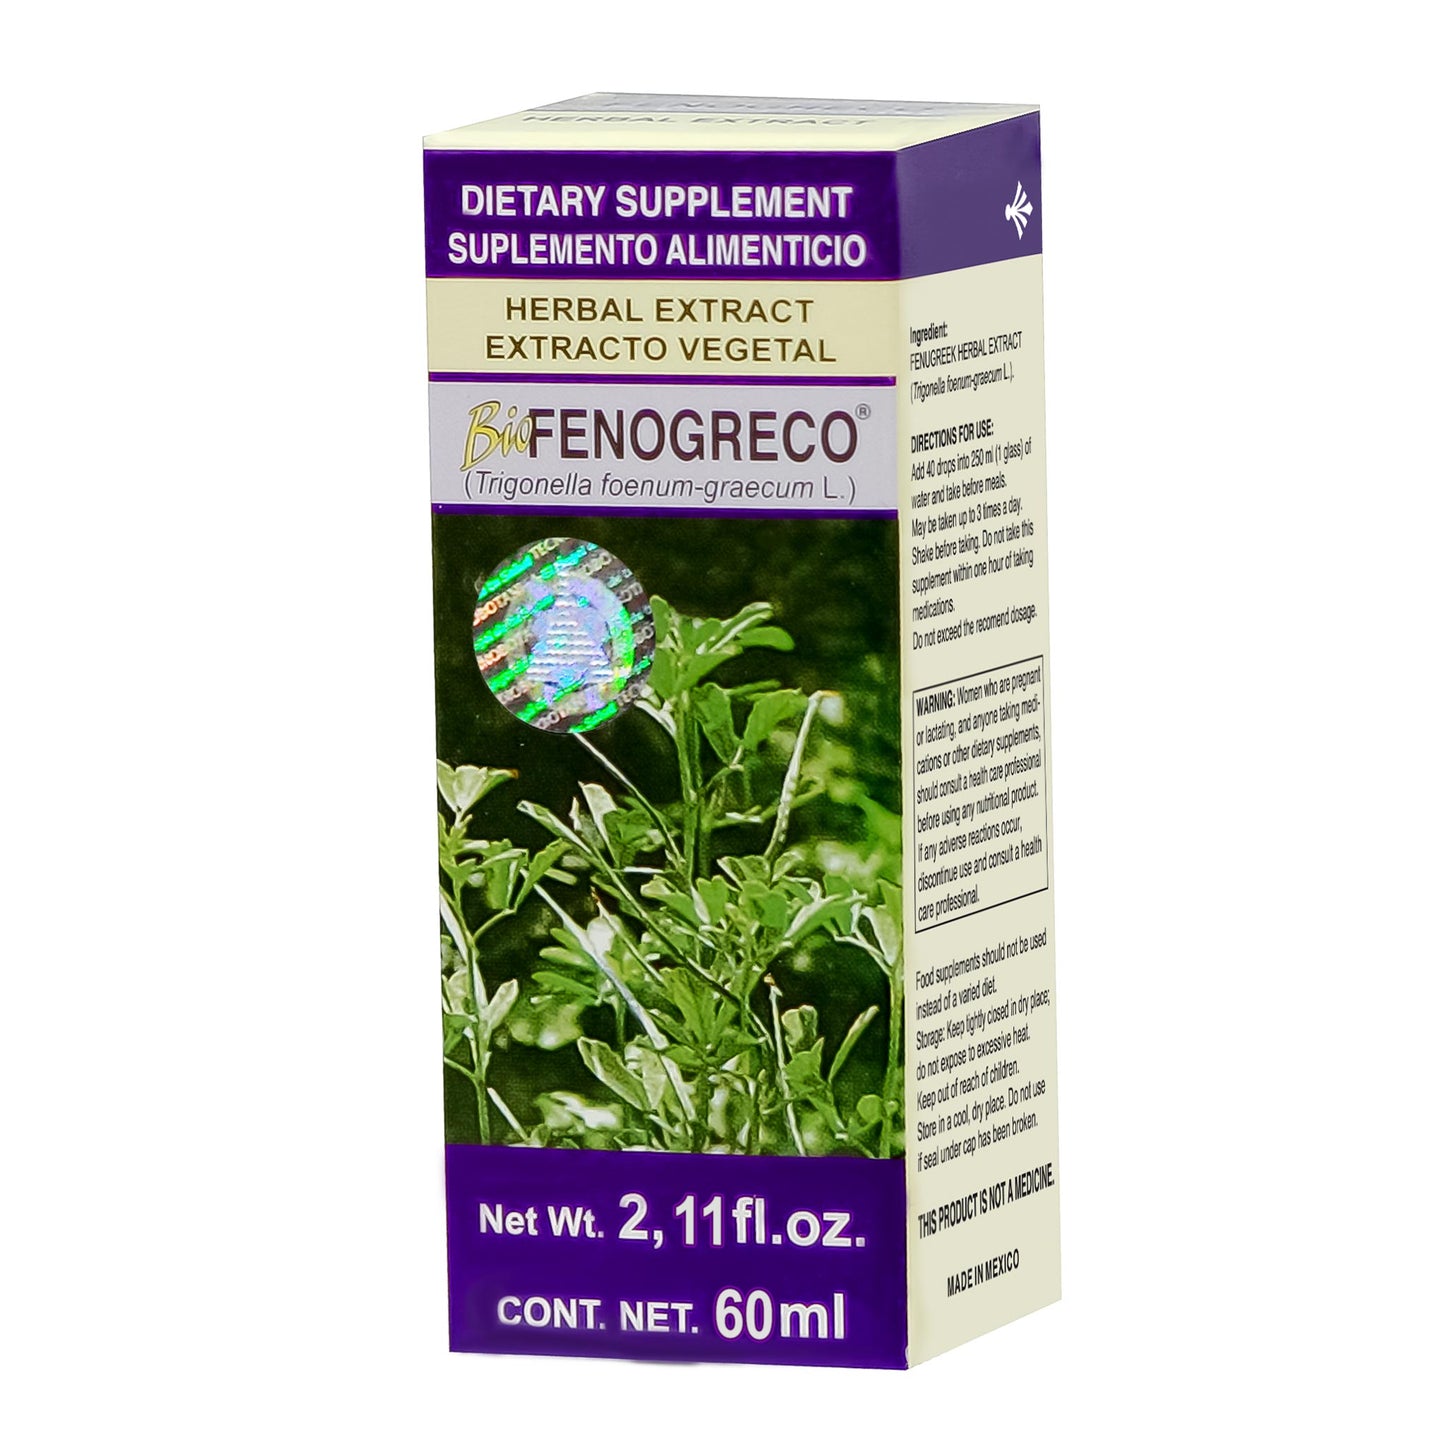 BIOFENOGRECO ® extracto vegetal 60ml